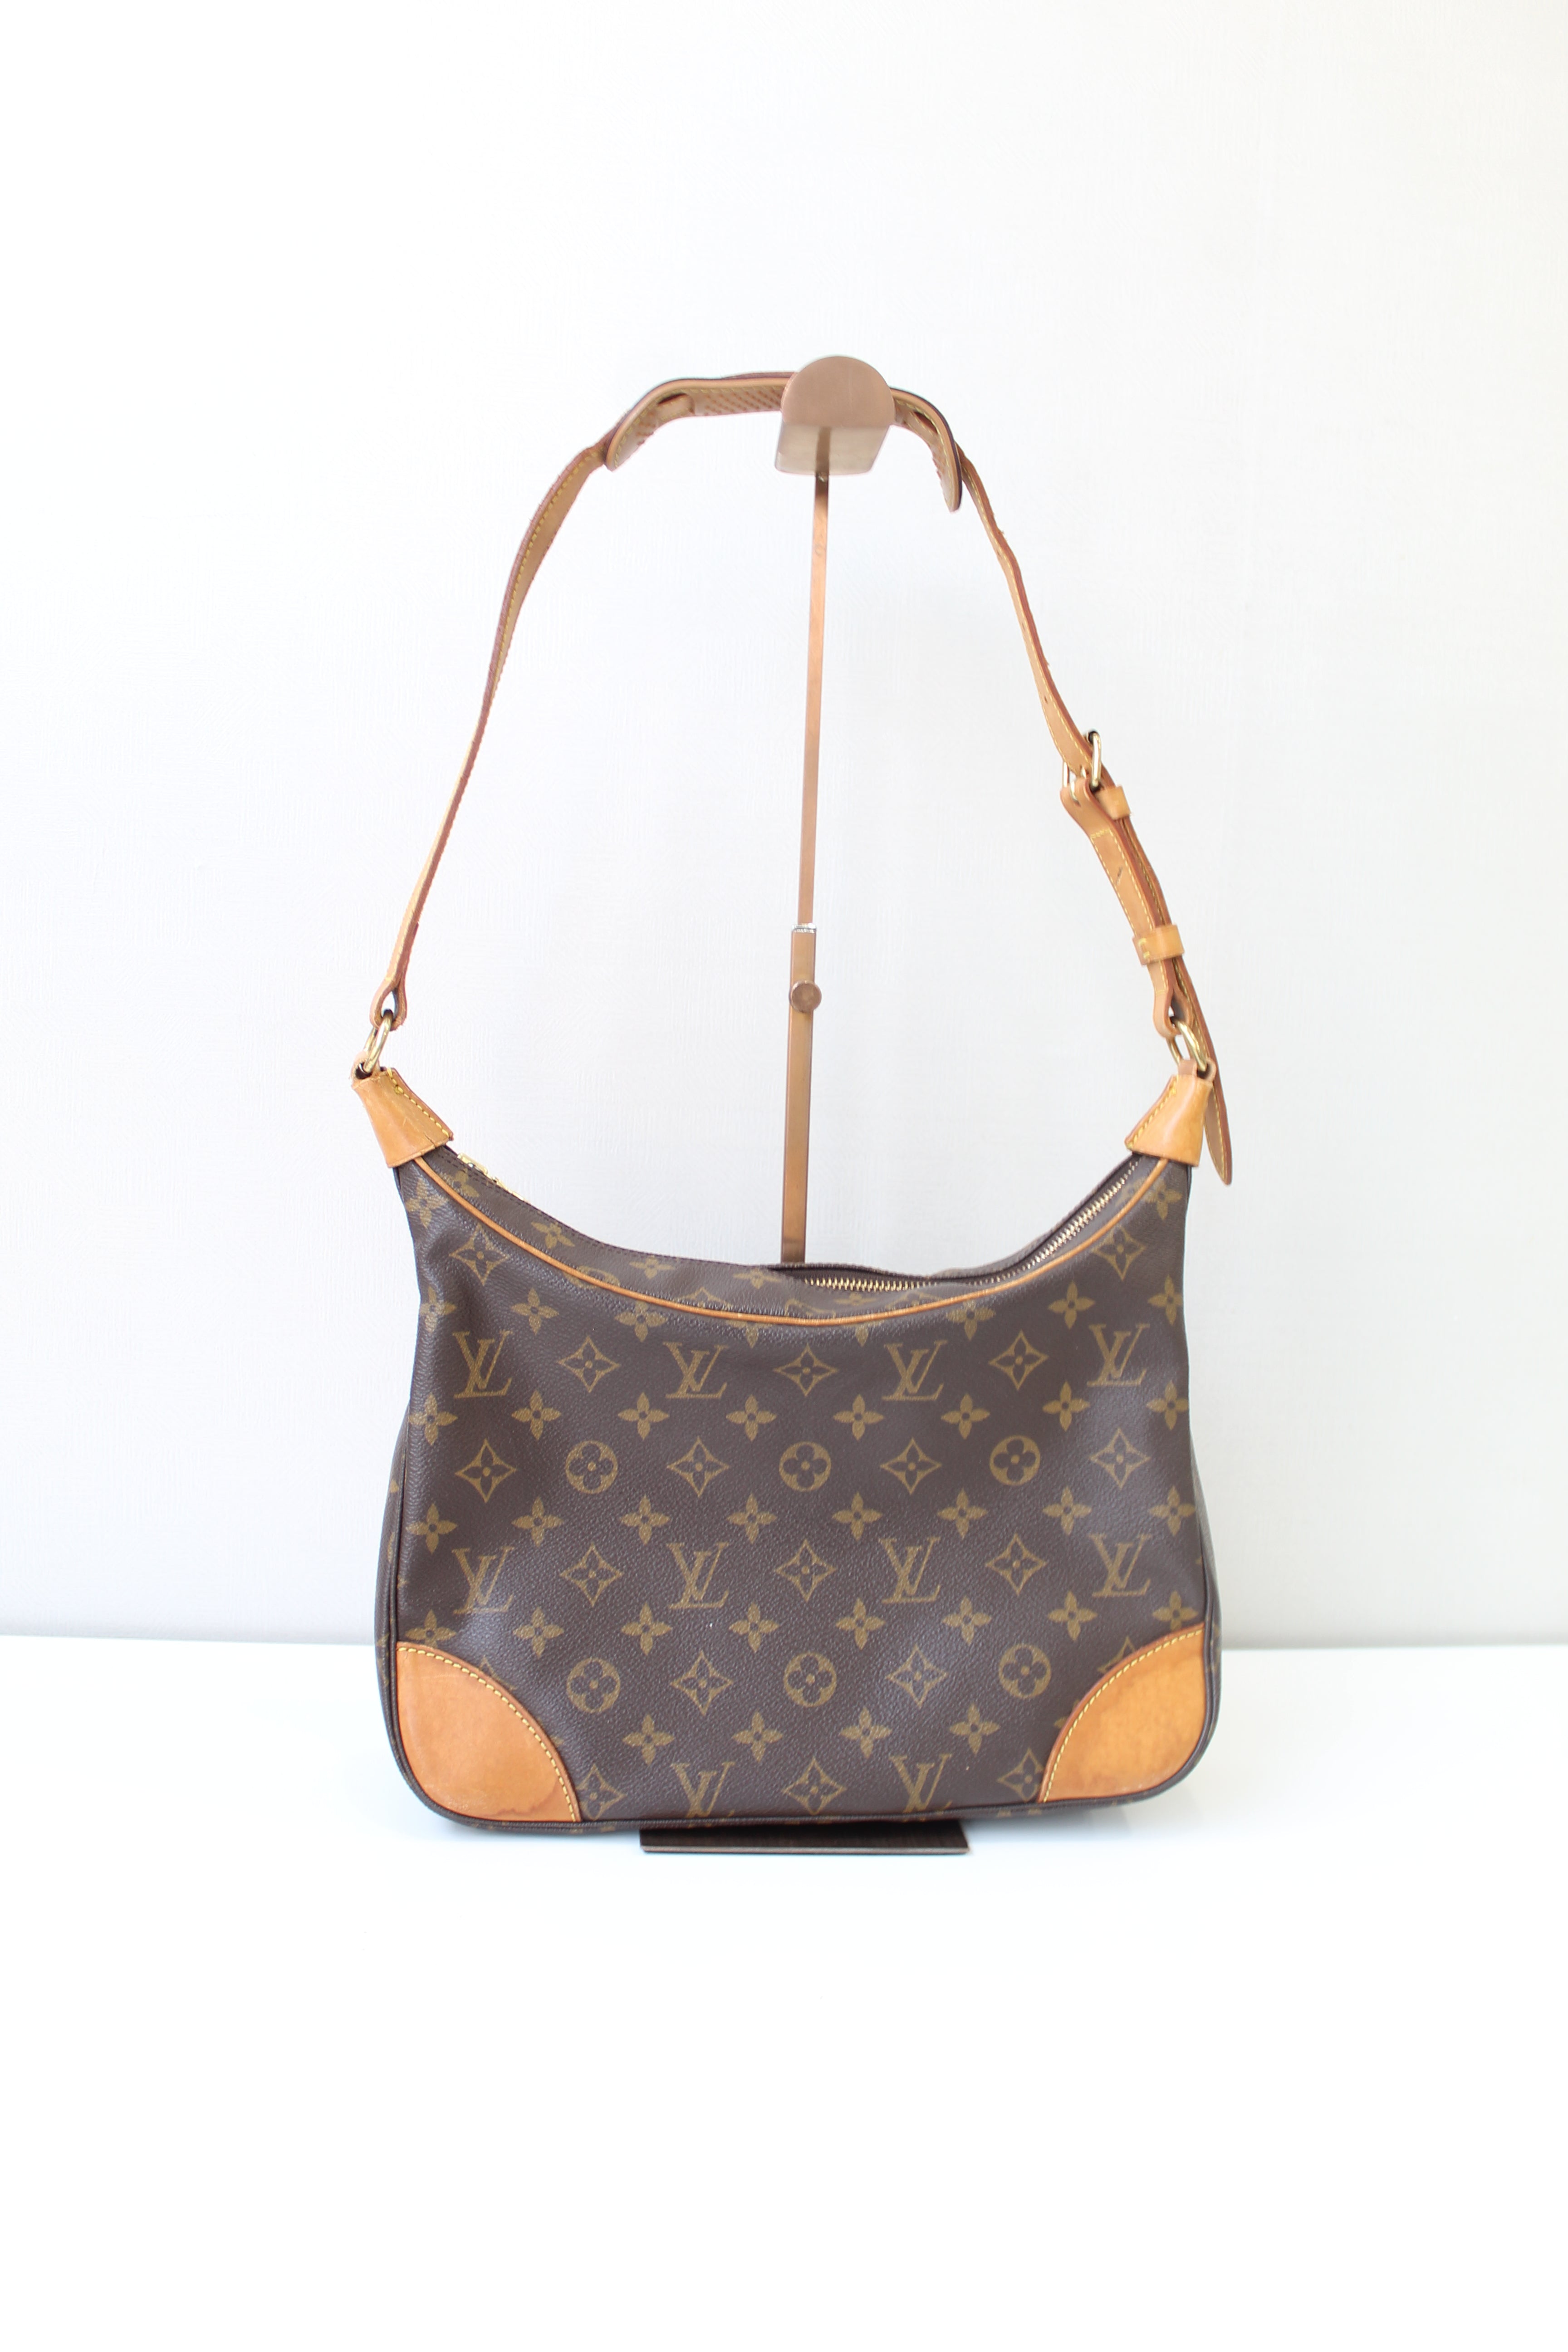 Louis Vuitton Boulogne Shoulder Bag